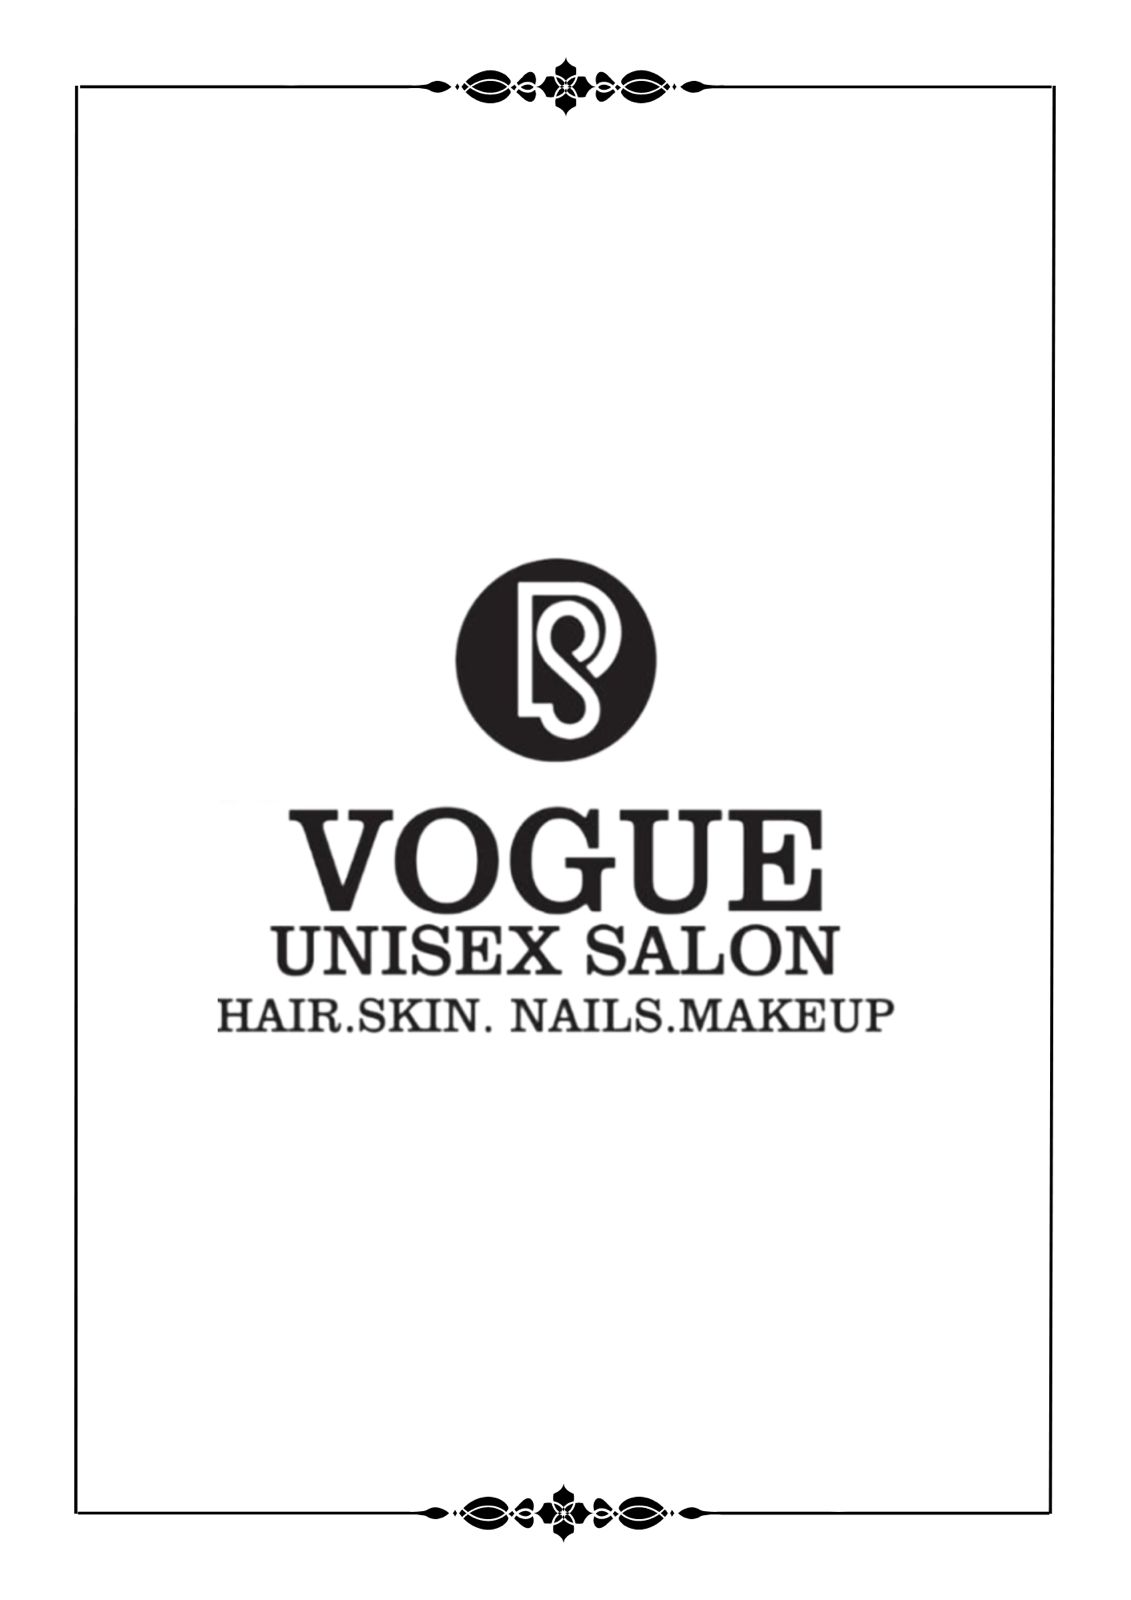 Vogue Unisex salon